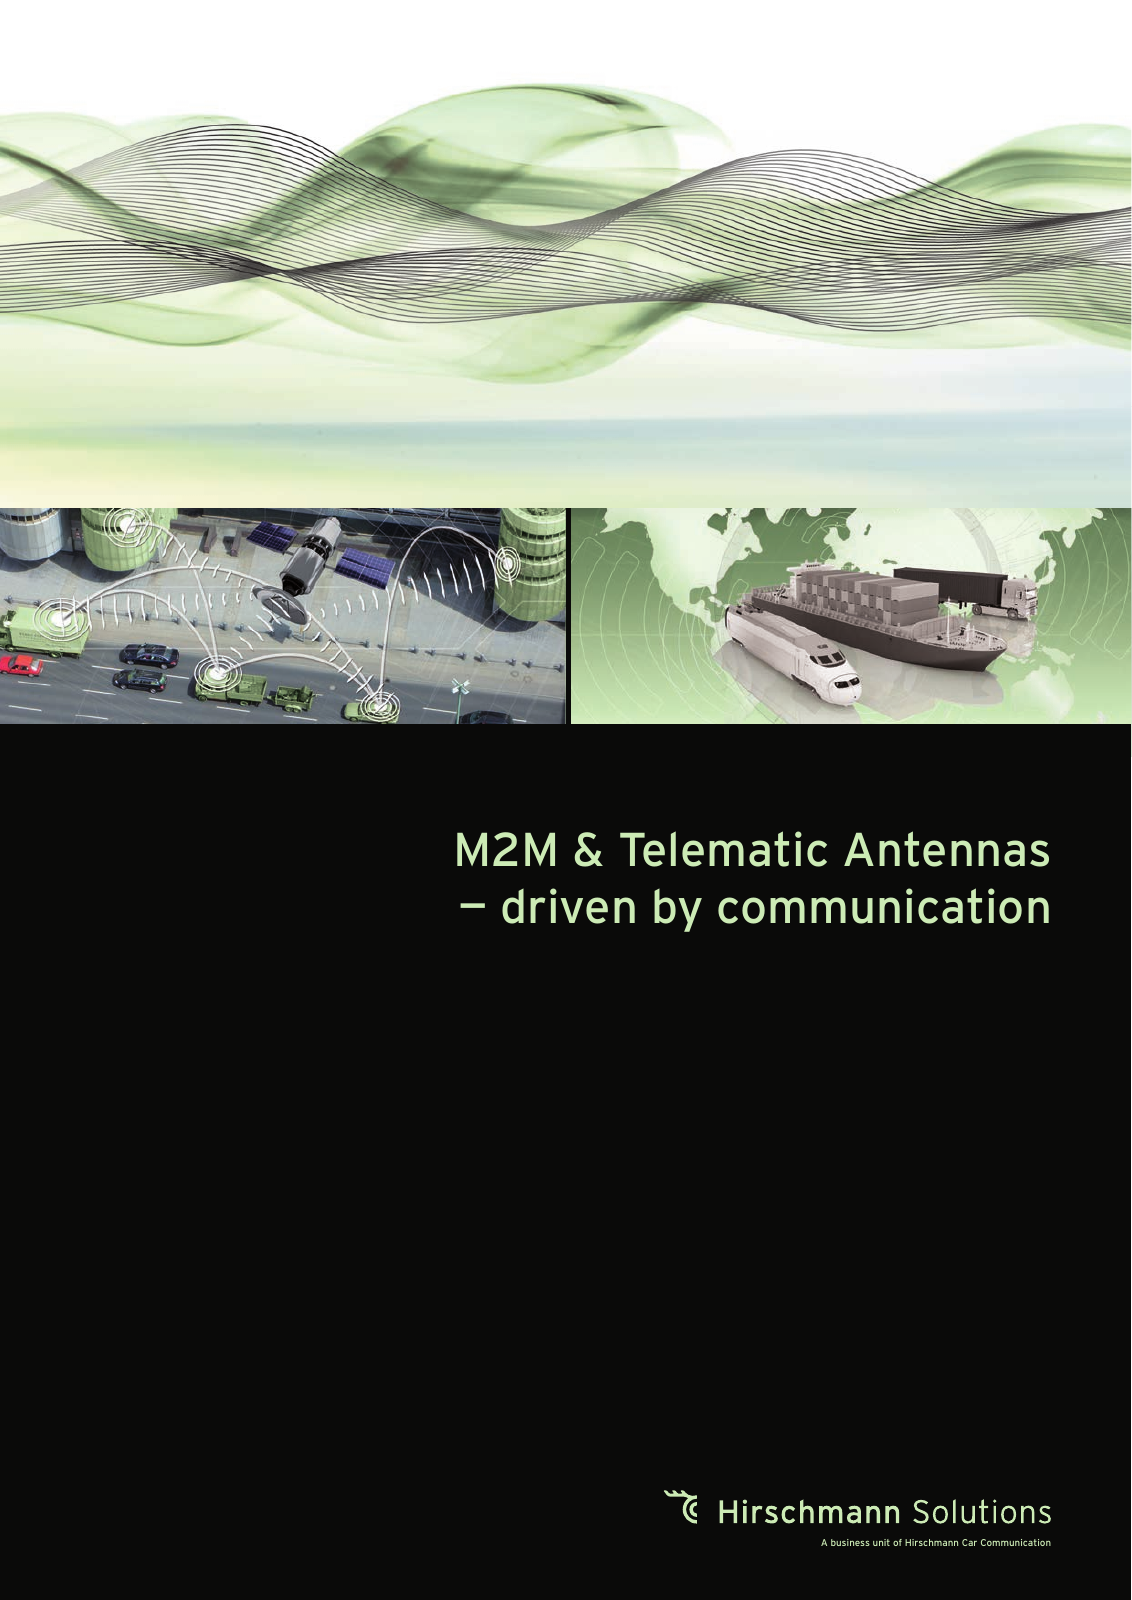 Vorschau Produktkatalog M2M & Telematic Antennas April '17 Seite 1